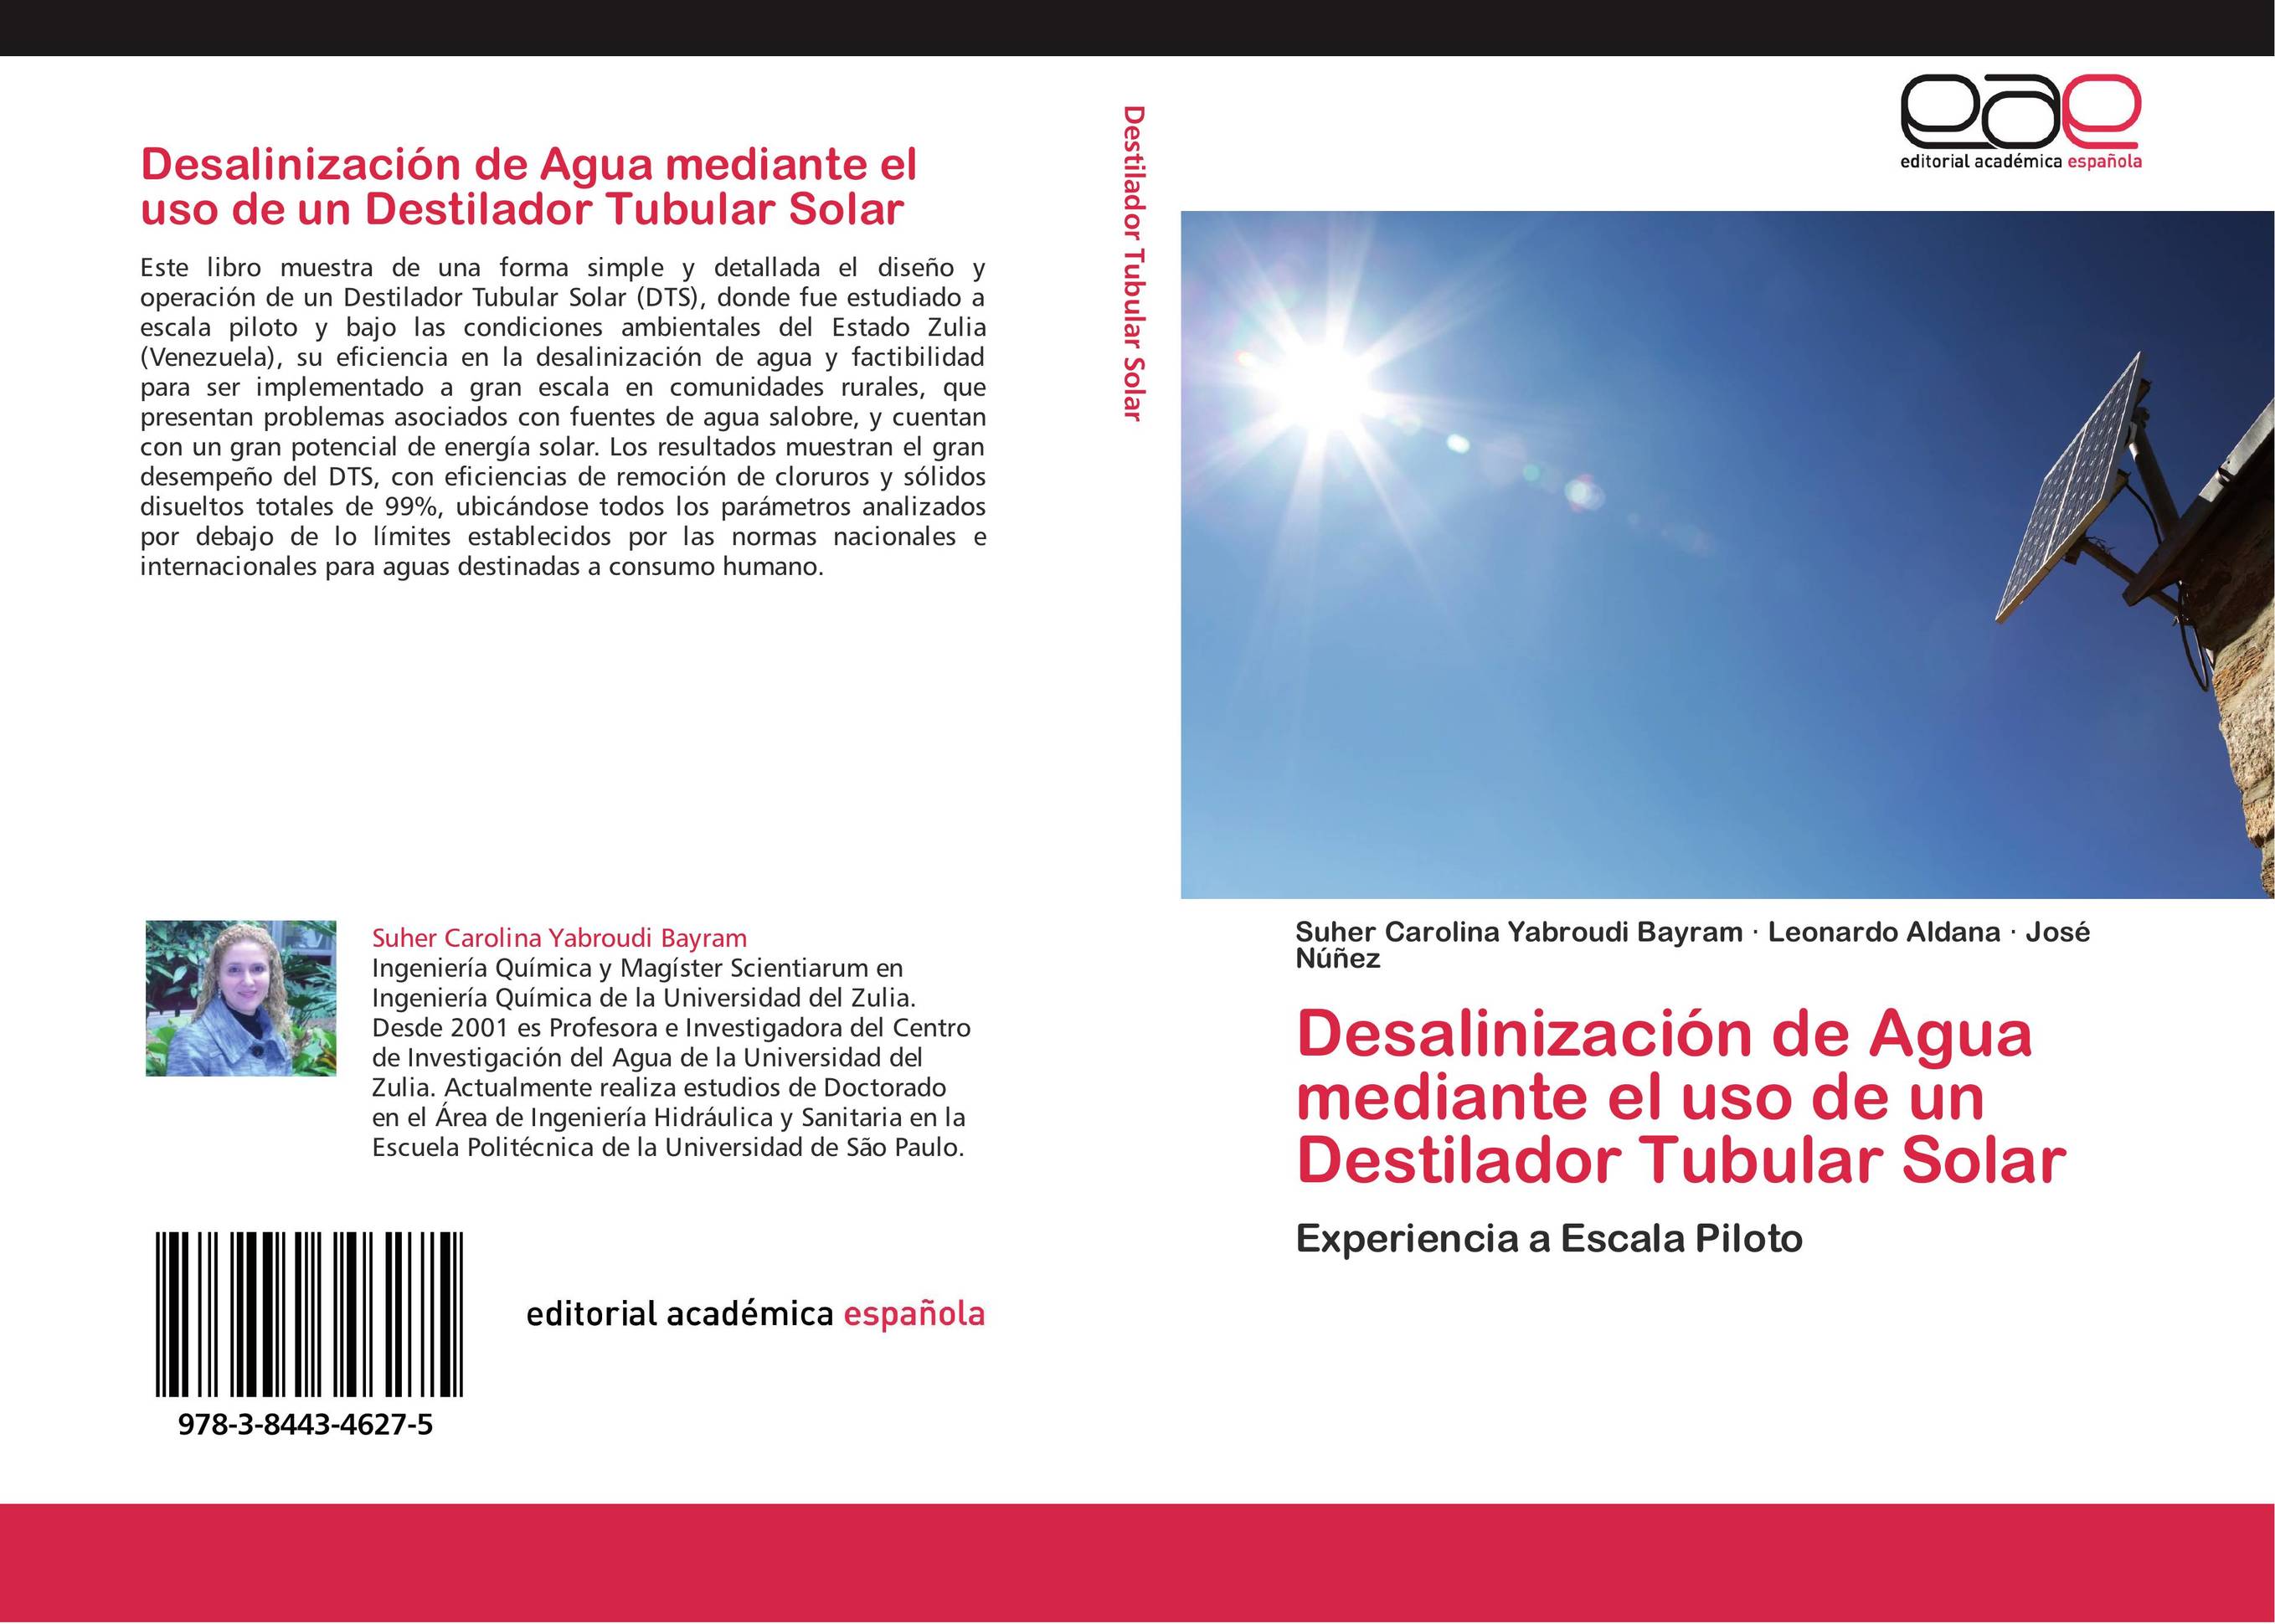 Desalinización de Agua mediante el uso de un Destilador Tubular Solar